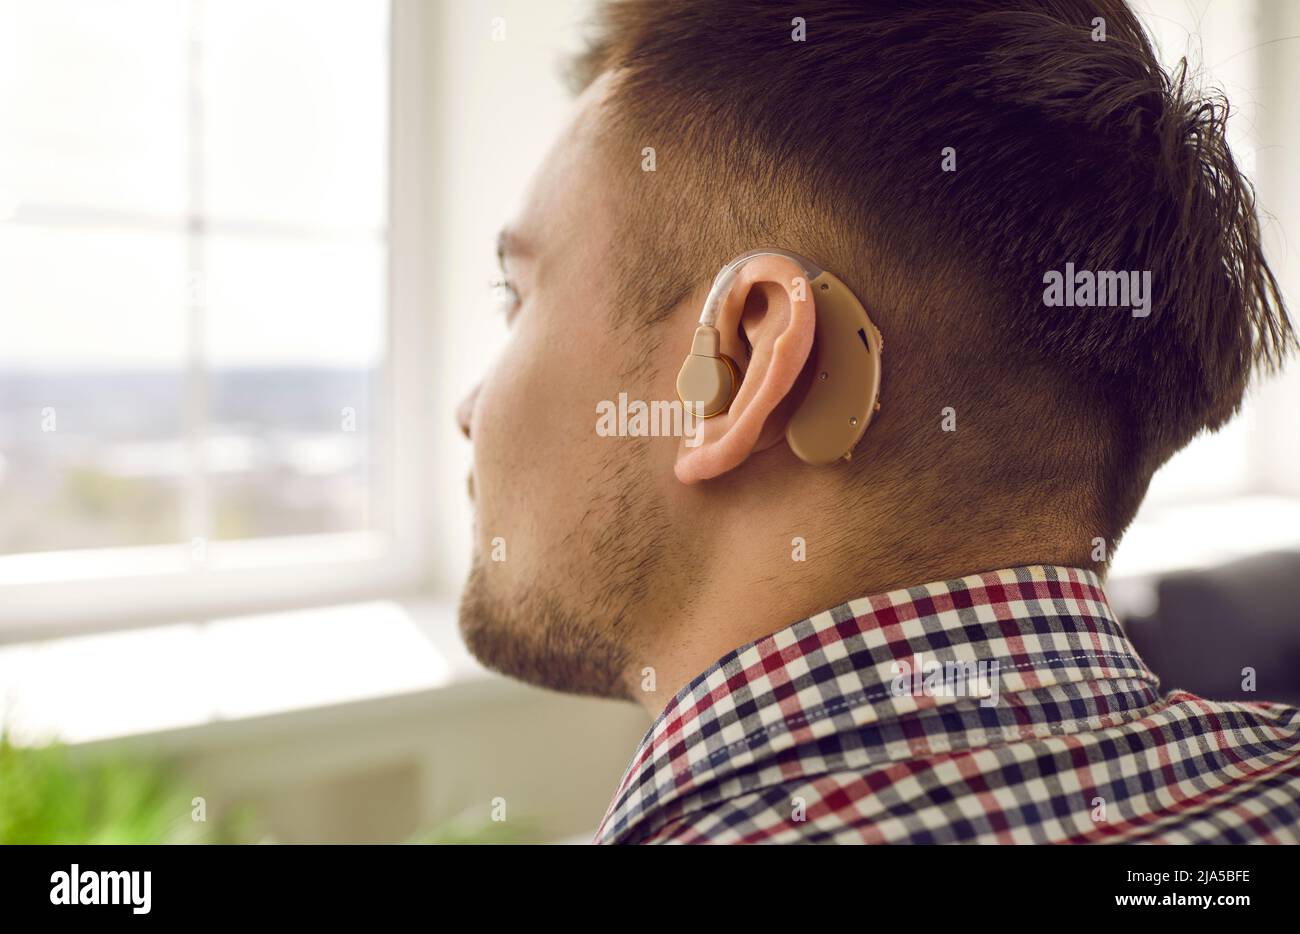 Nahaufnahme eines jungen Mannes, der sein Gehör mit einem Hörgerät am Ohr verloren hat Stockfoto